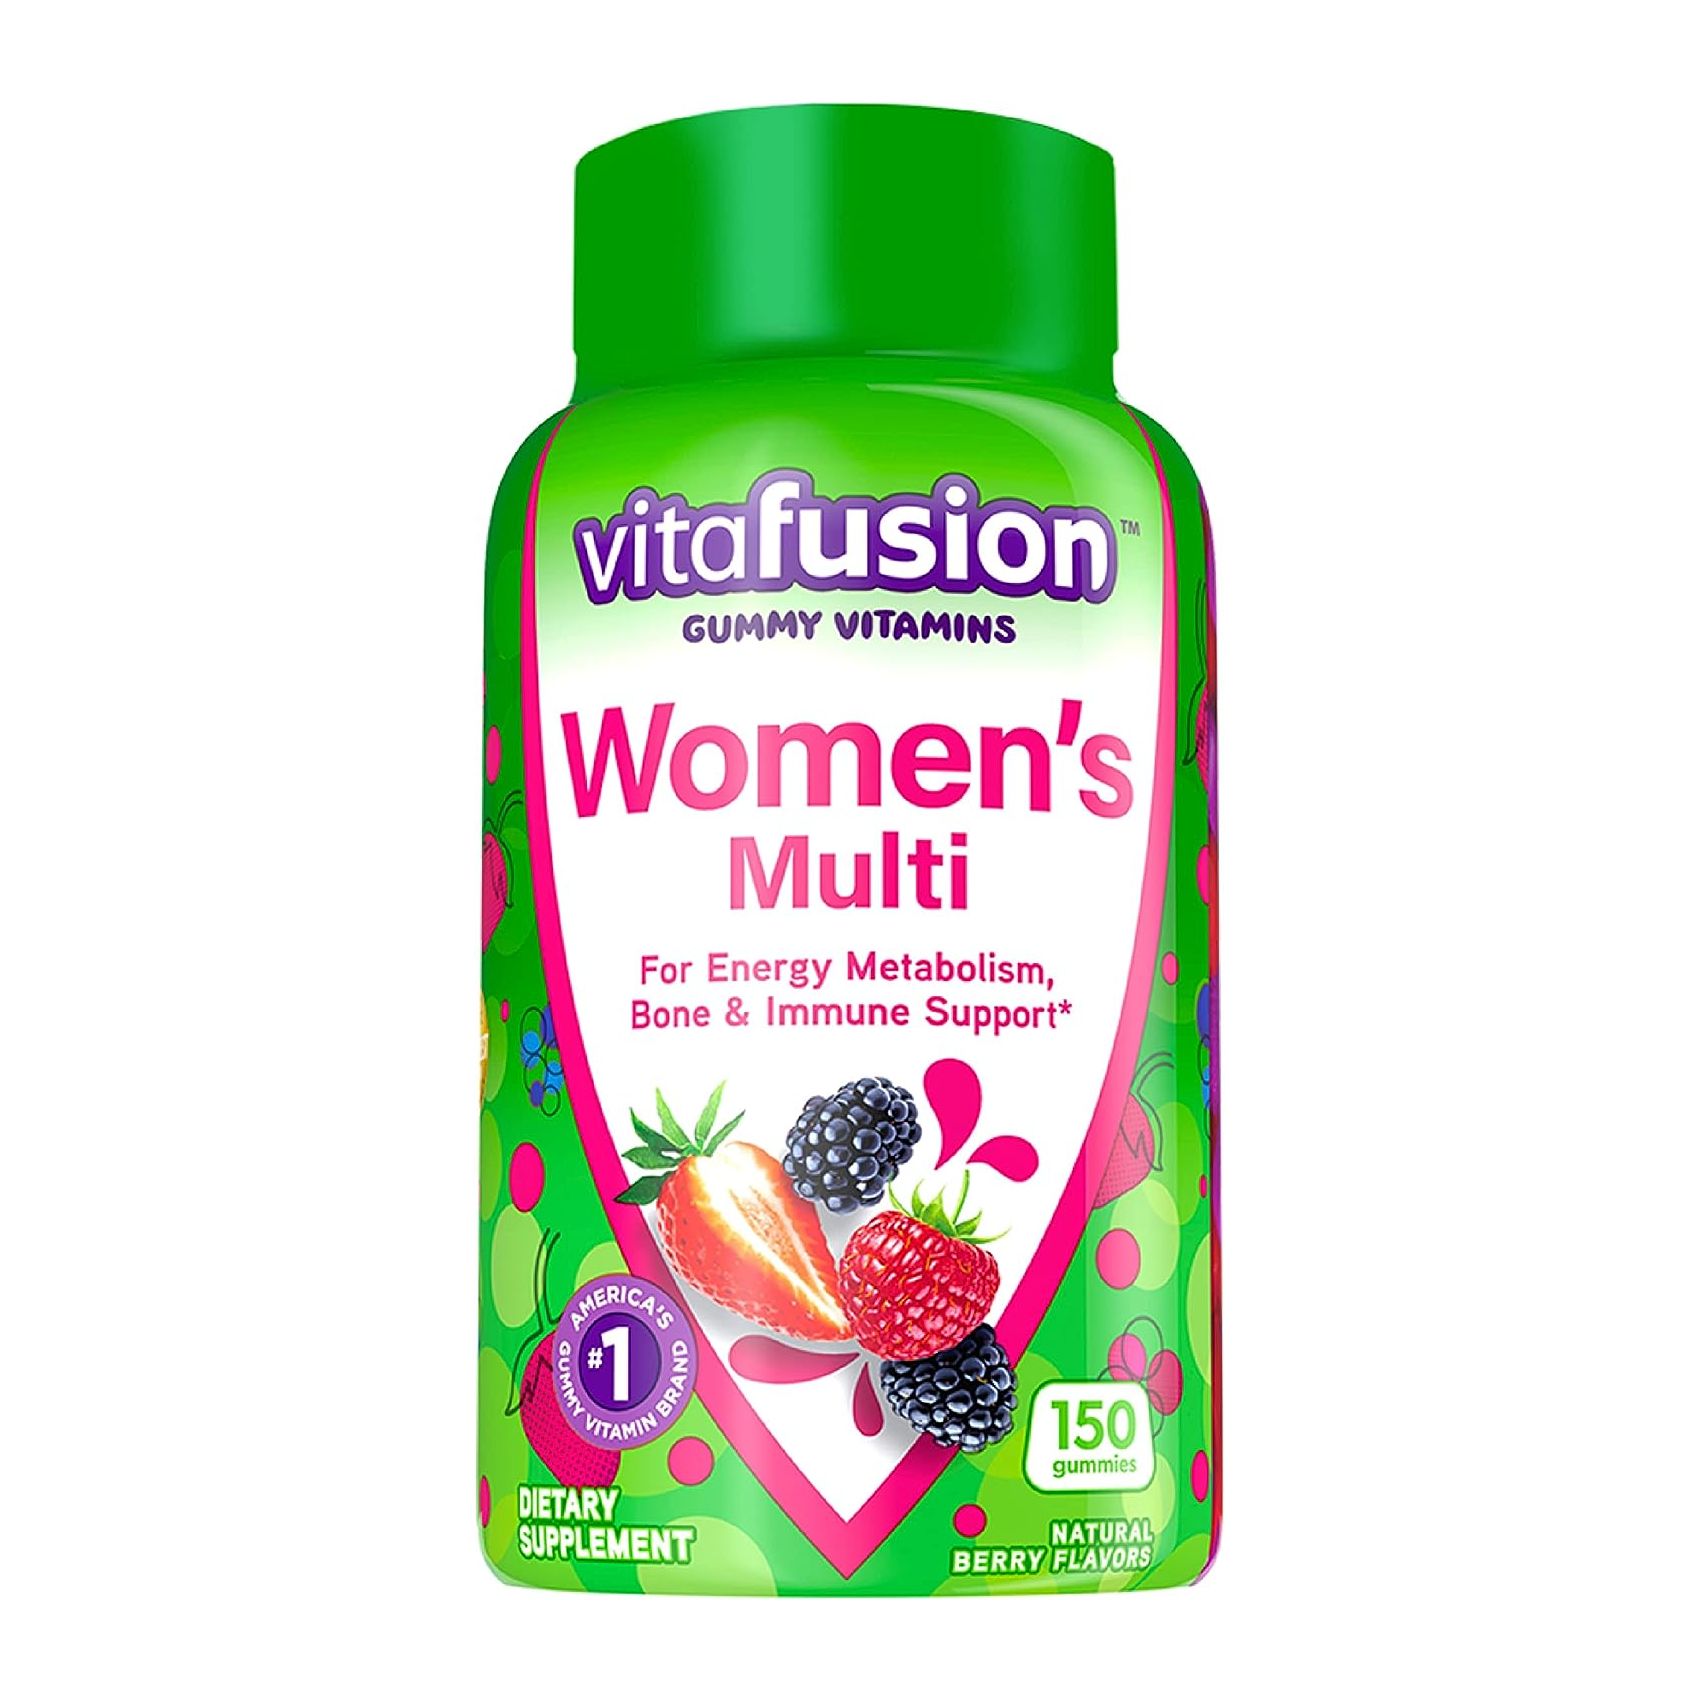 Мультивитамины Vitafusion Womens Gummies Berry Flavored, 150 жевательных конфет vitafusion multivites незаменимые мультивитамины натуральный ягодный персиковый и апельсиновый вкусы 150